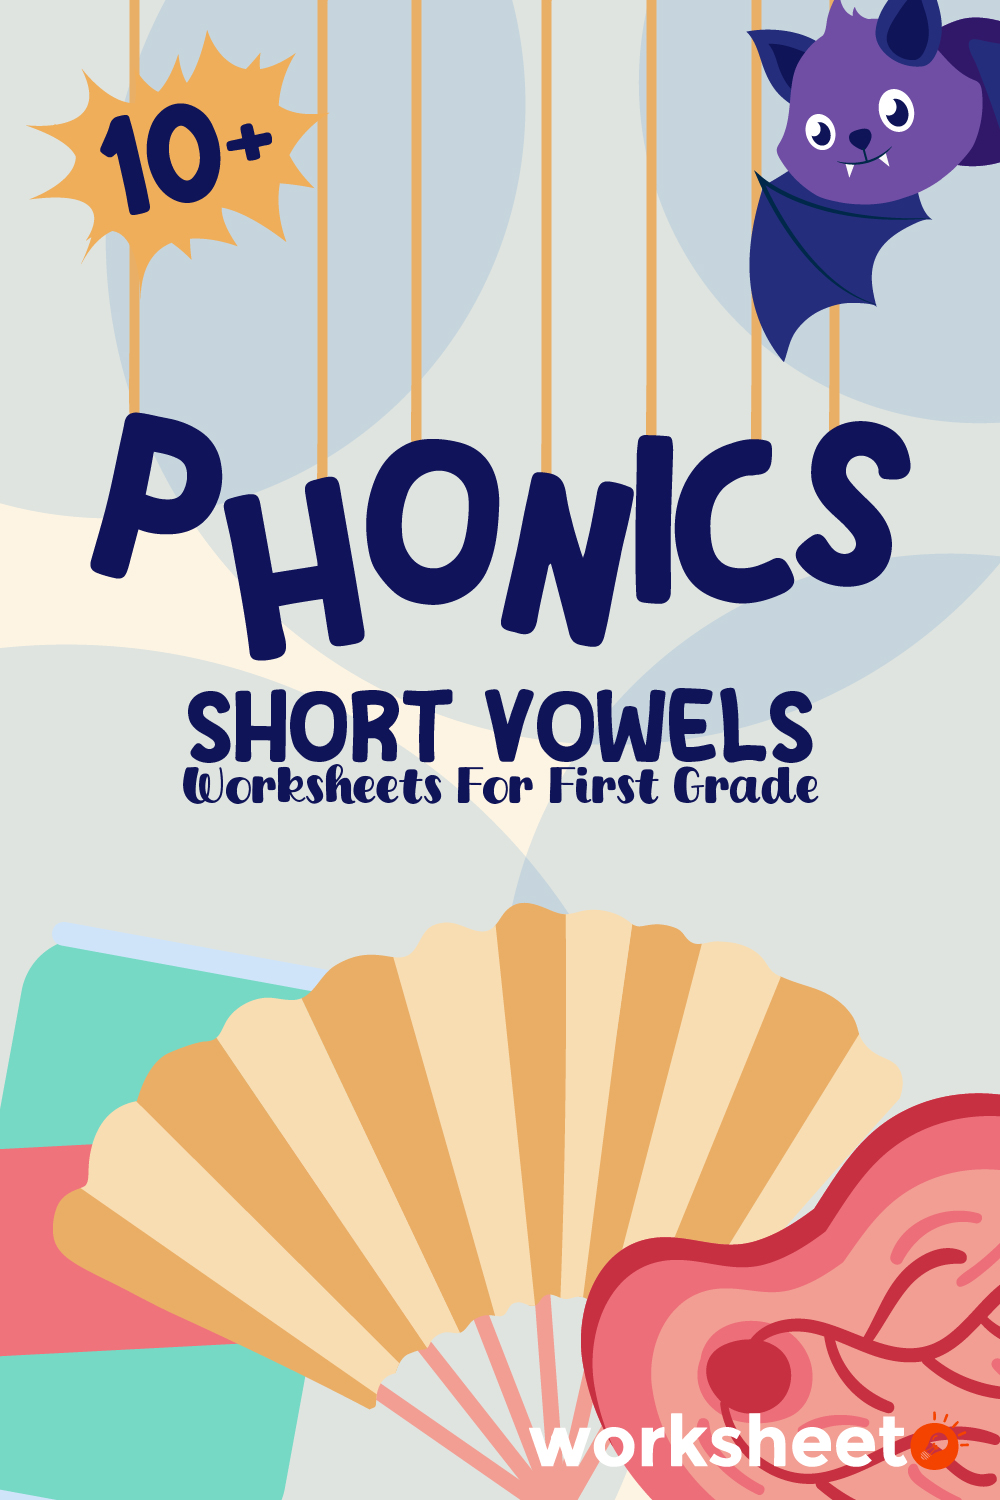 Phonics Short Vowels Worksheets for First Grade